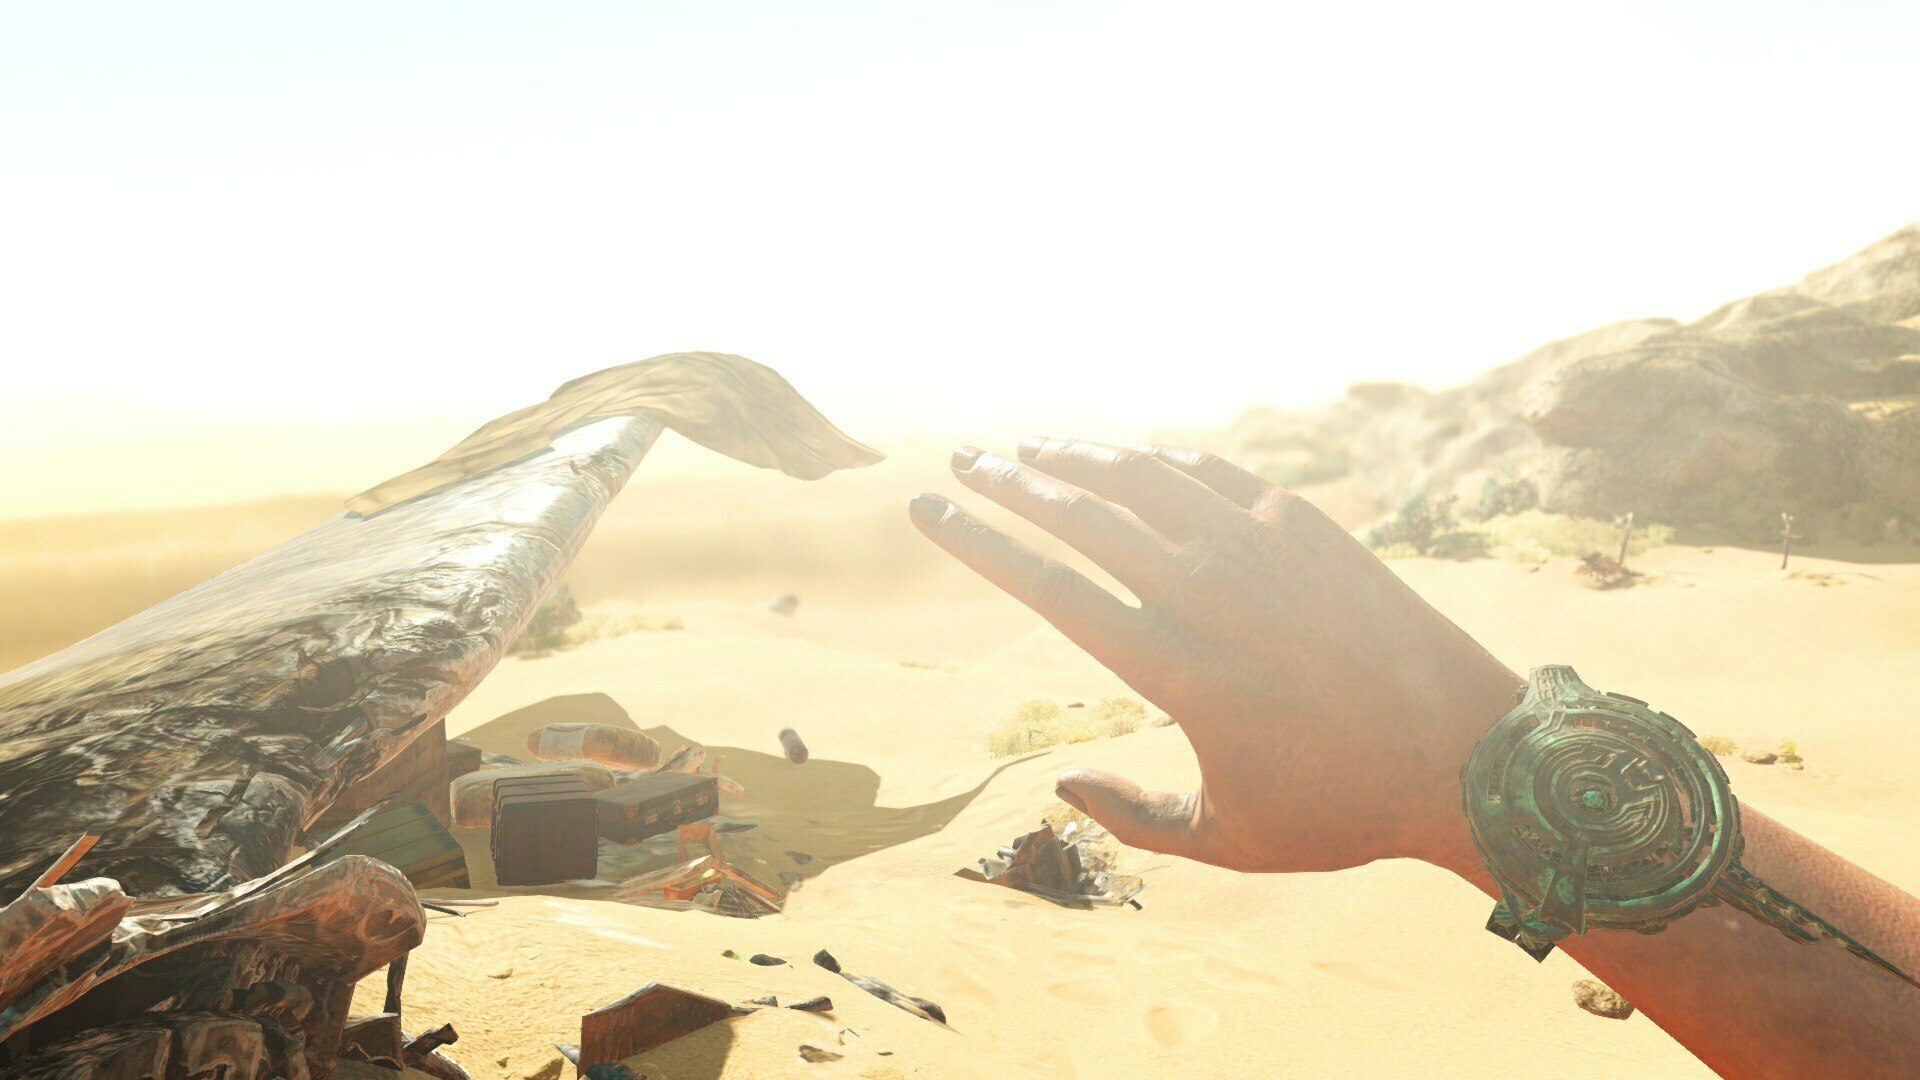 遊戲開始於陽光之下的沙漠